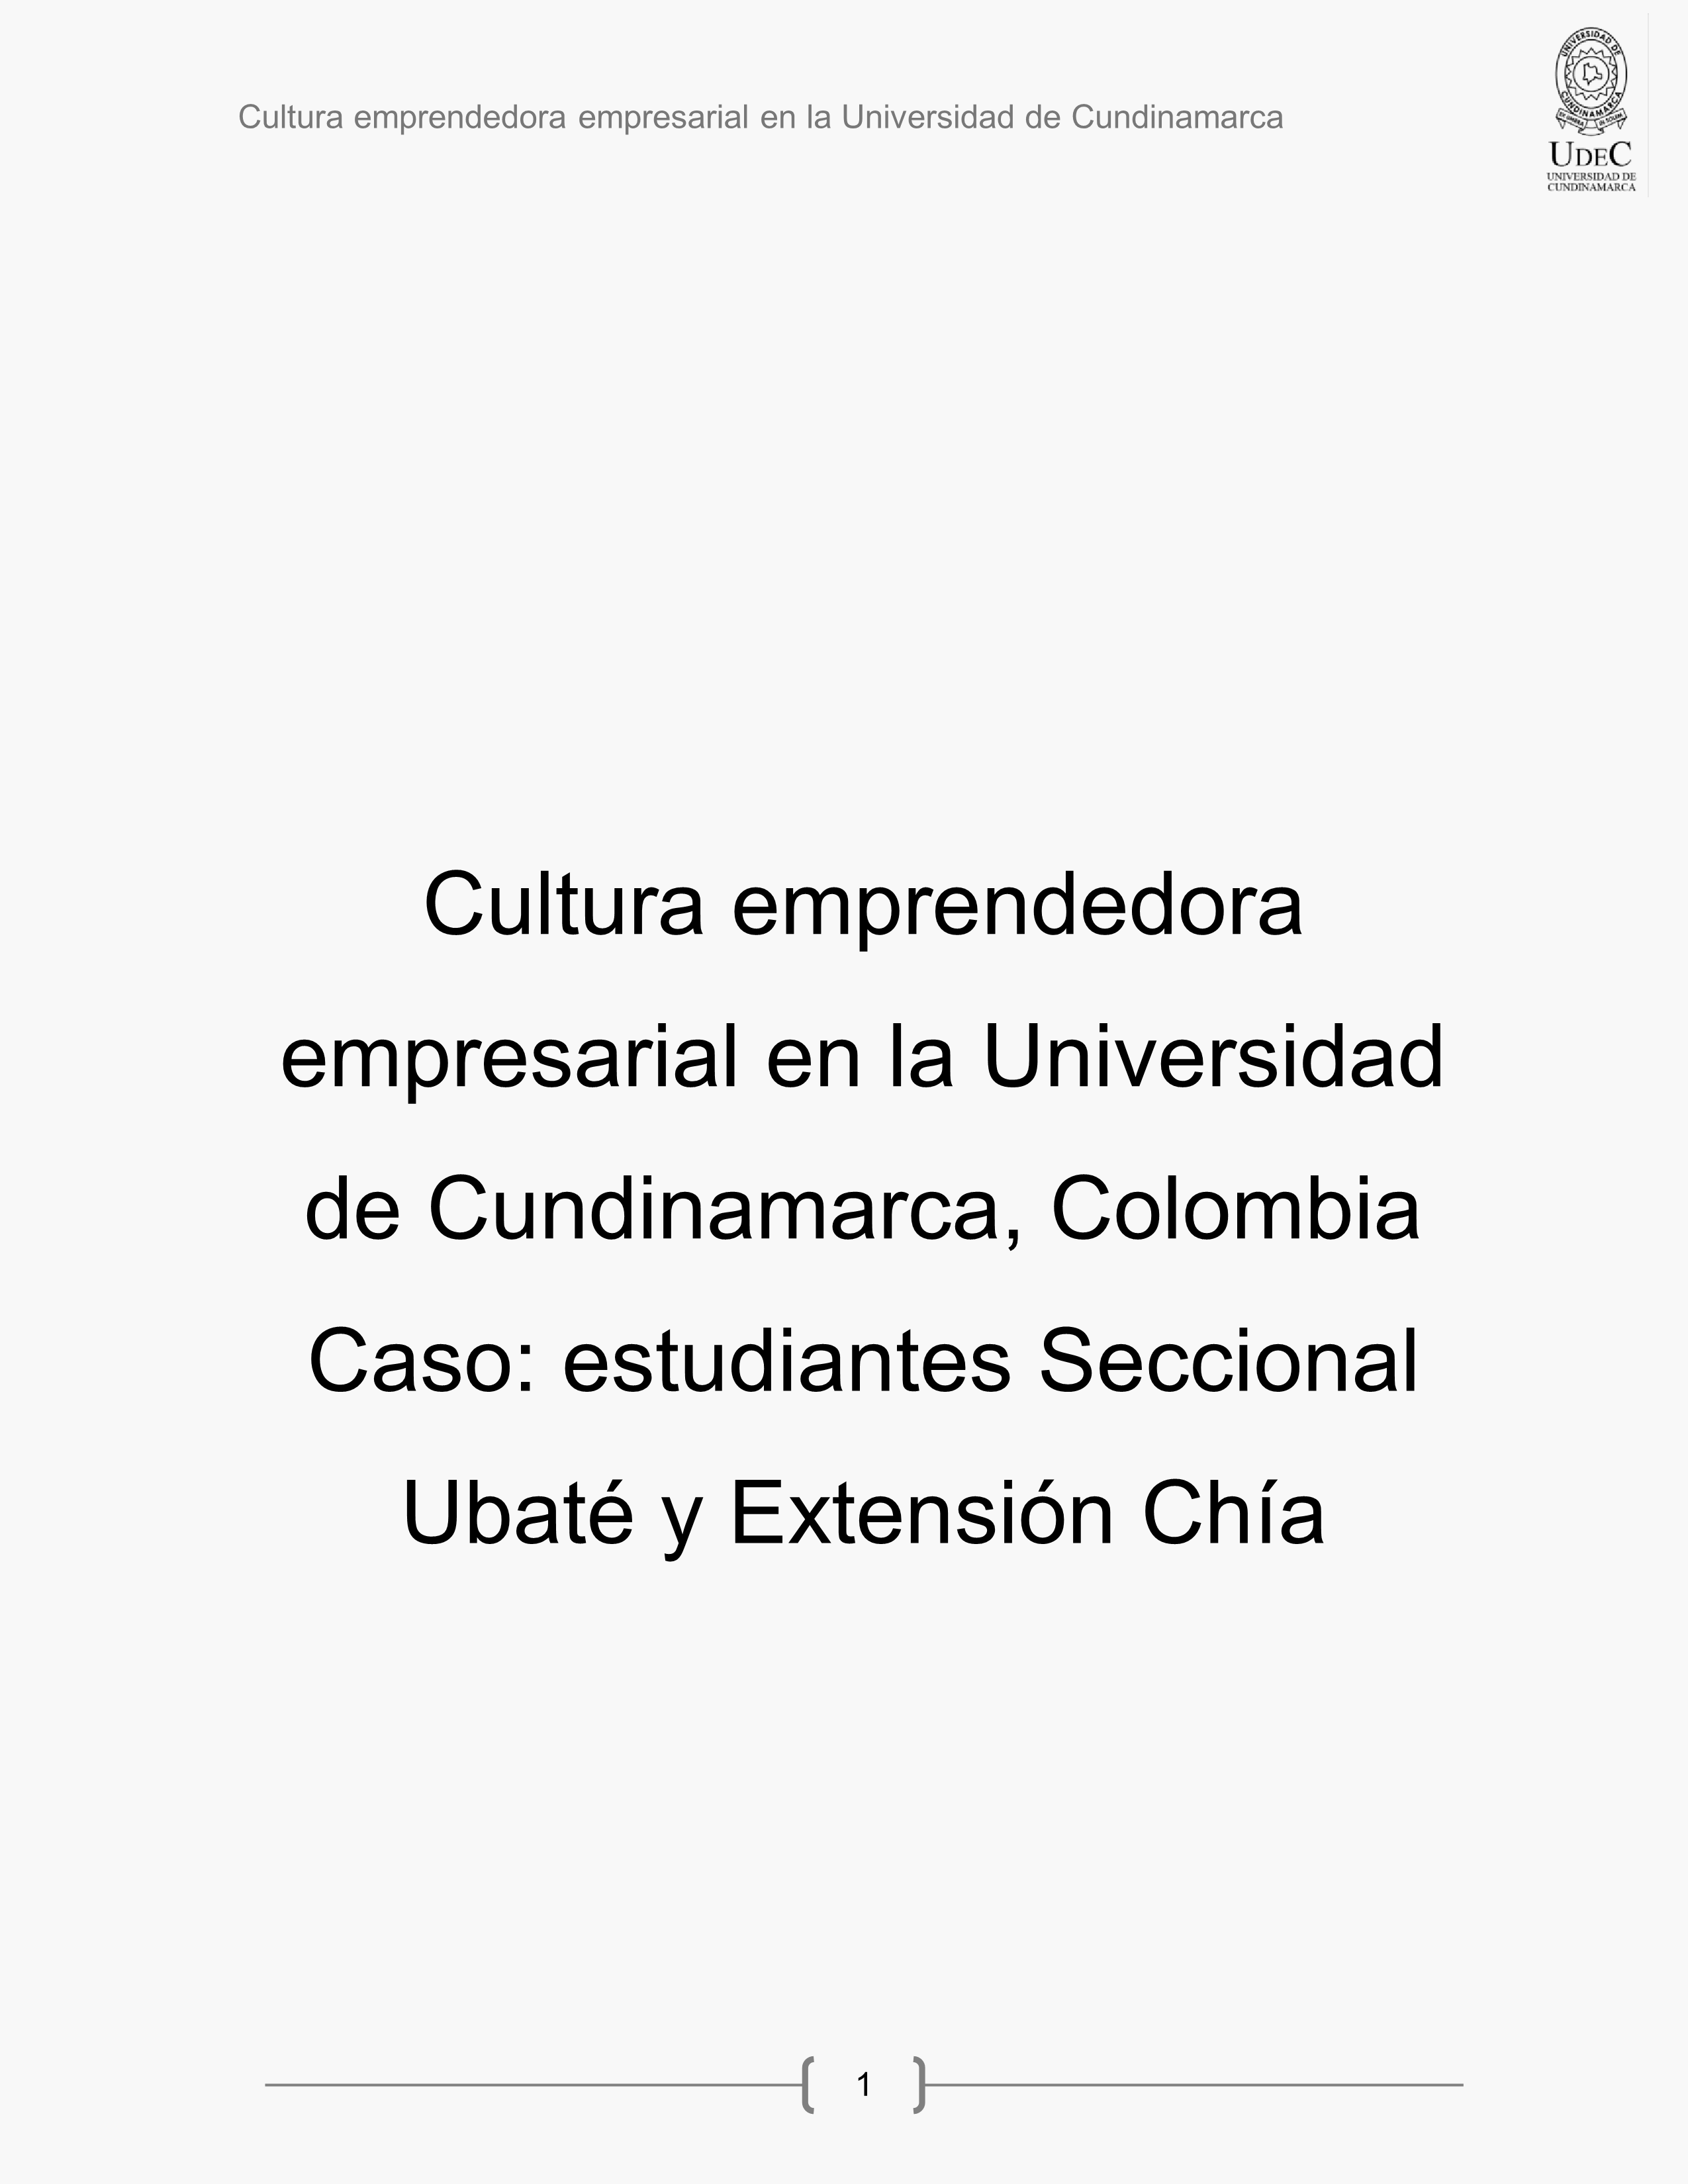 Cultura emprendedora empresarial en la Universidad de Cundinamarca - Colombia